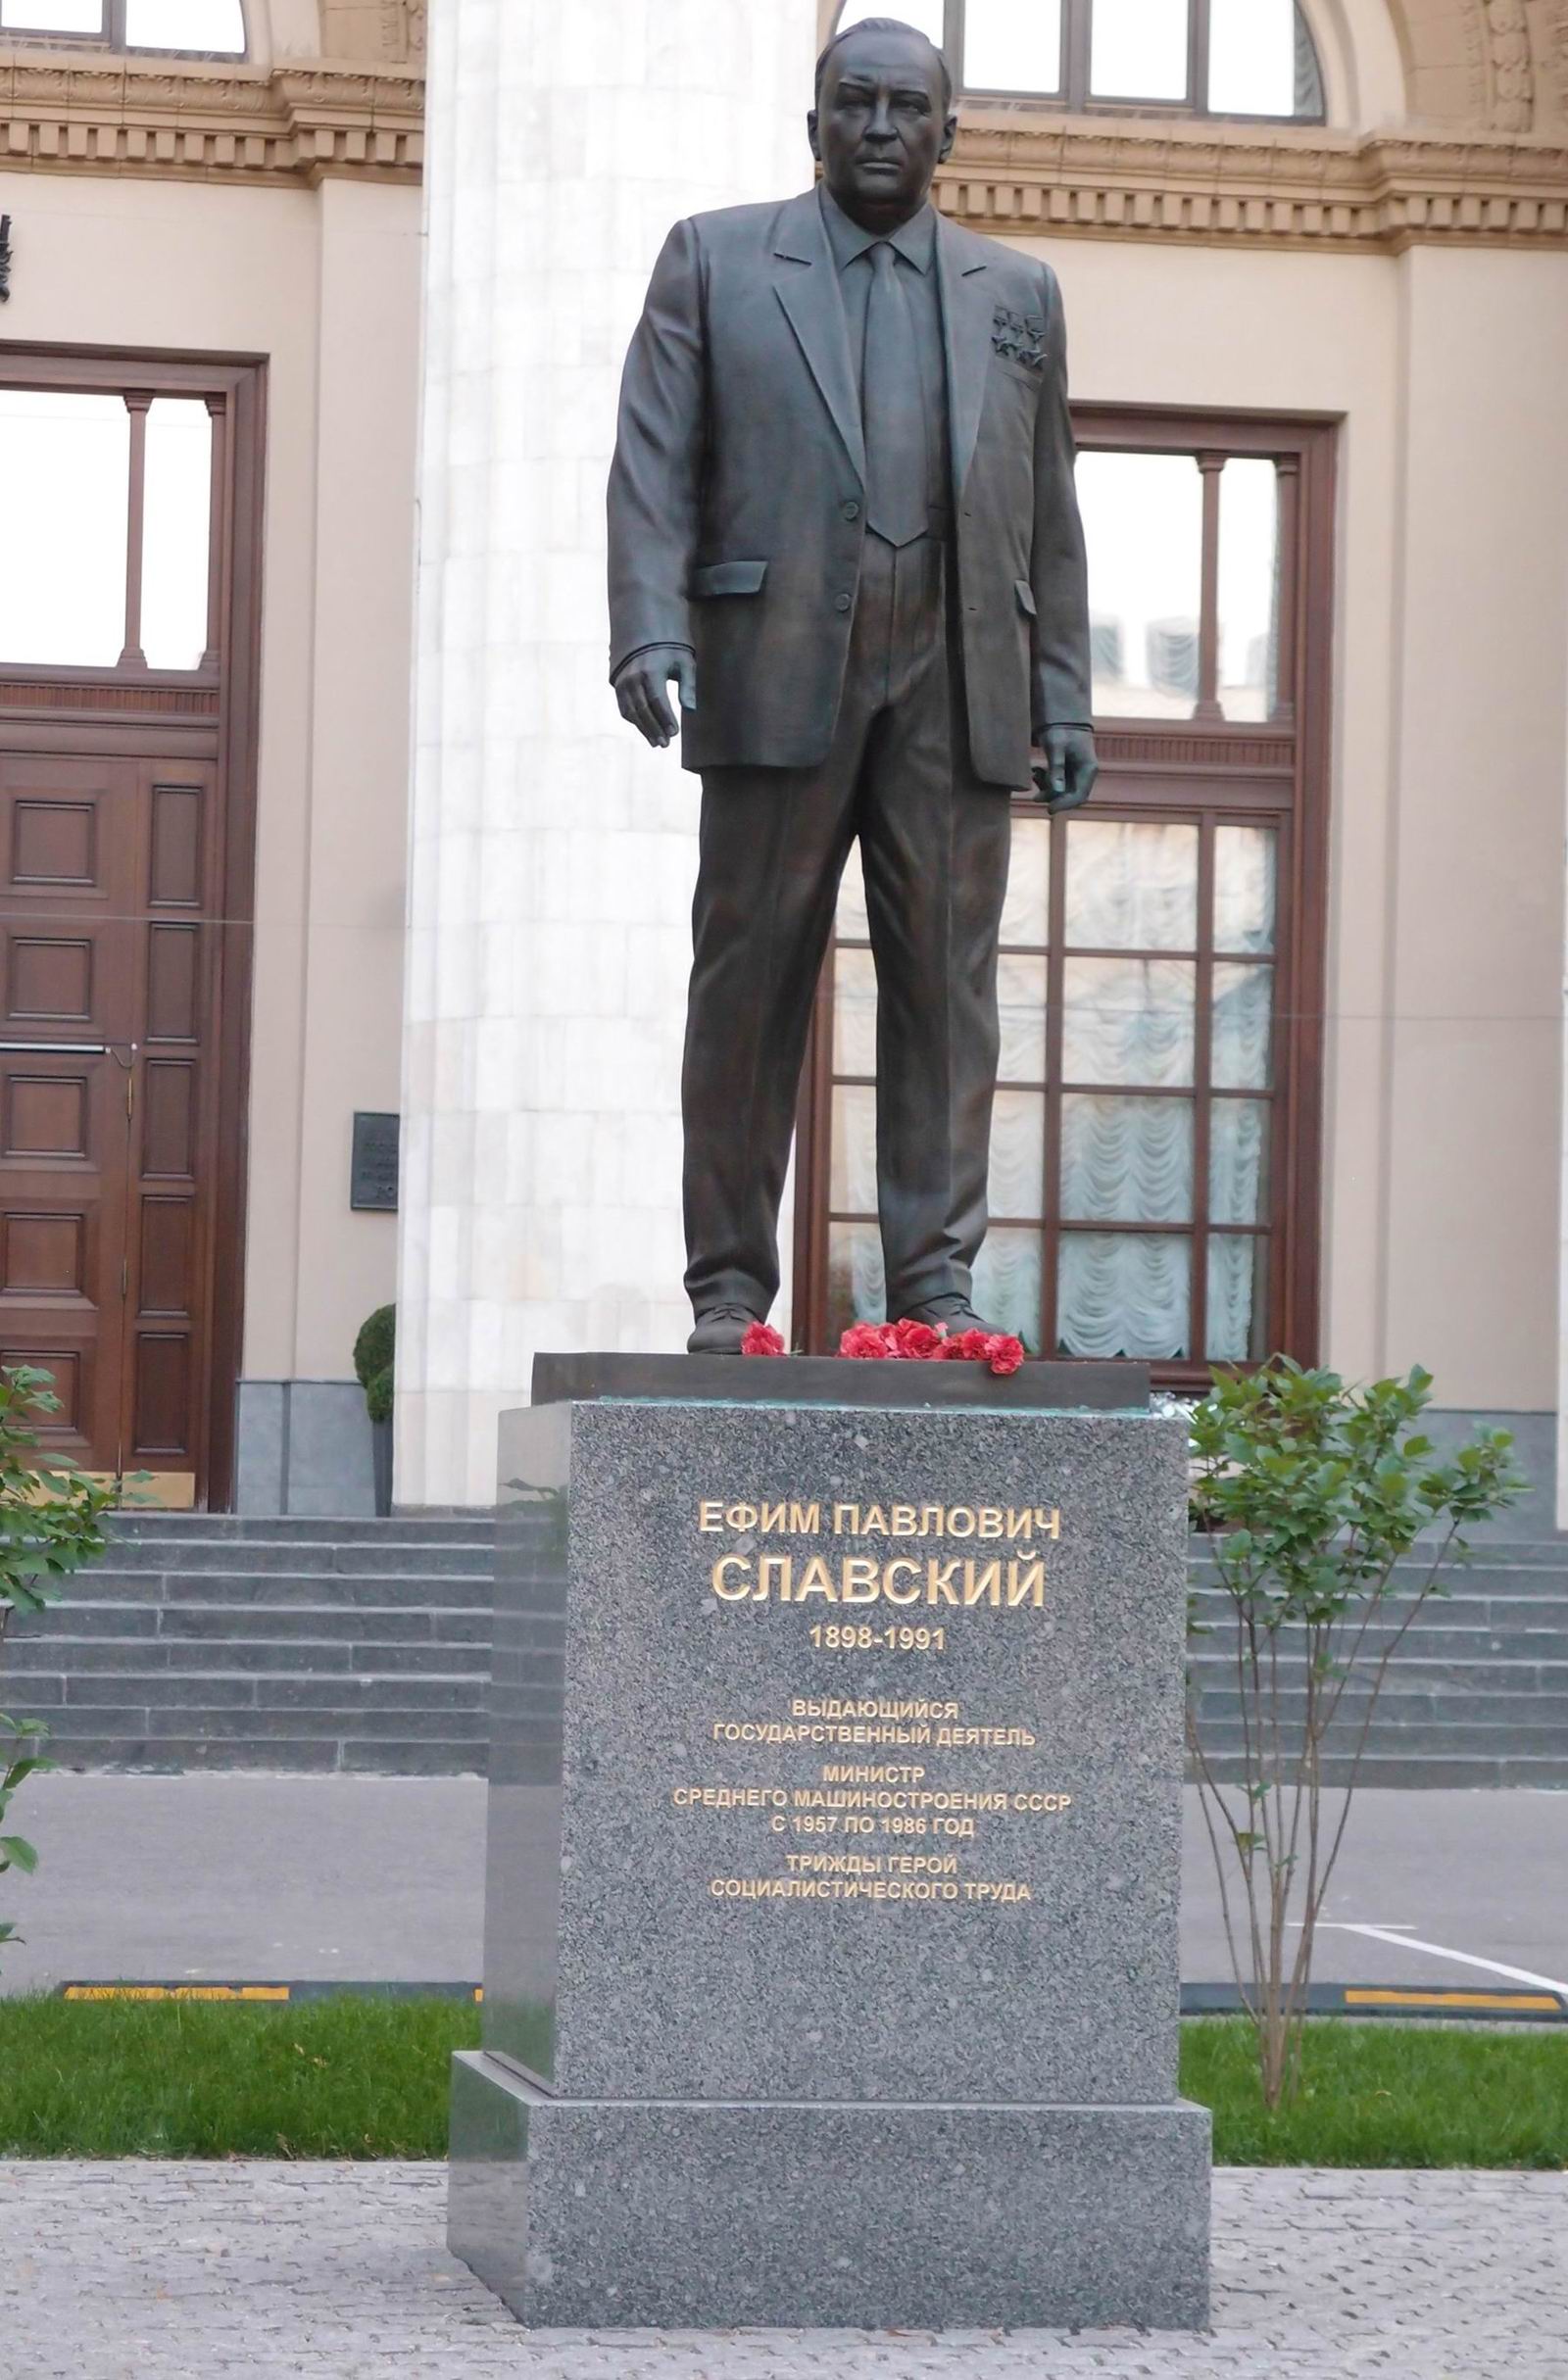 Памятник Славскому Е.П. (1898–1991), ск. С.А.Щербаков, на улице Большая Ордынка, открыт в августе 2020.